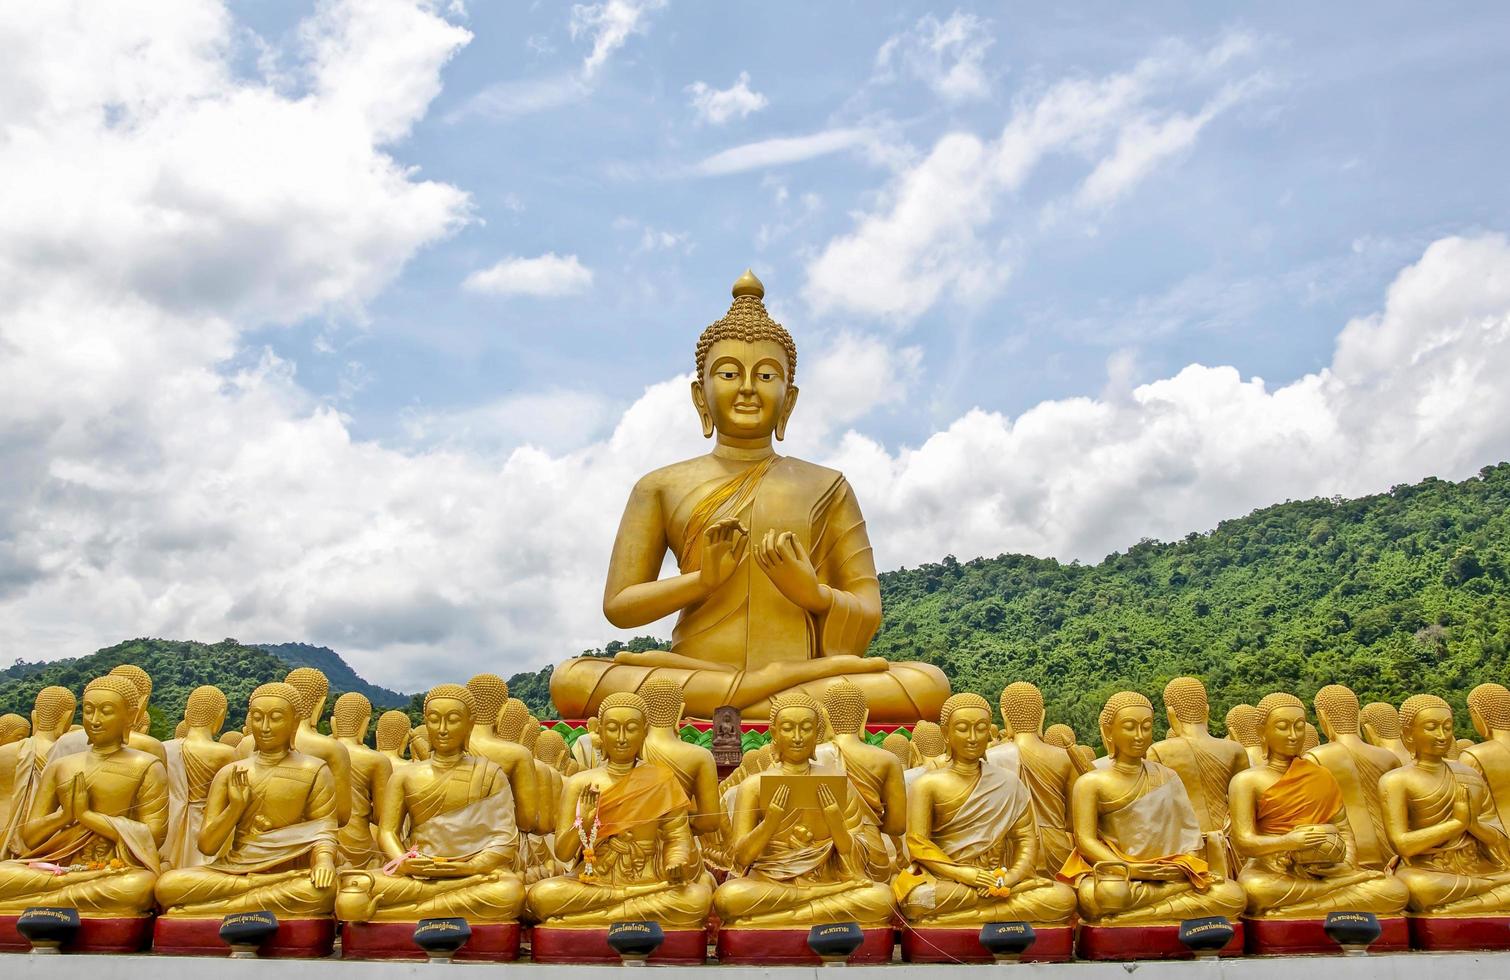 estatua dorada de buda en el parque conmemorativo de buda, tailandia foto